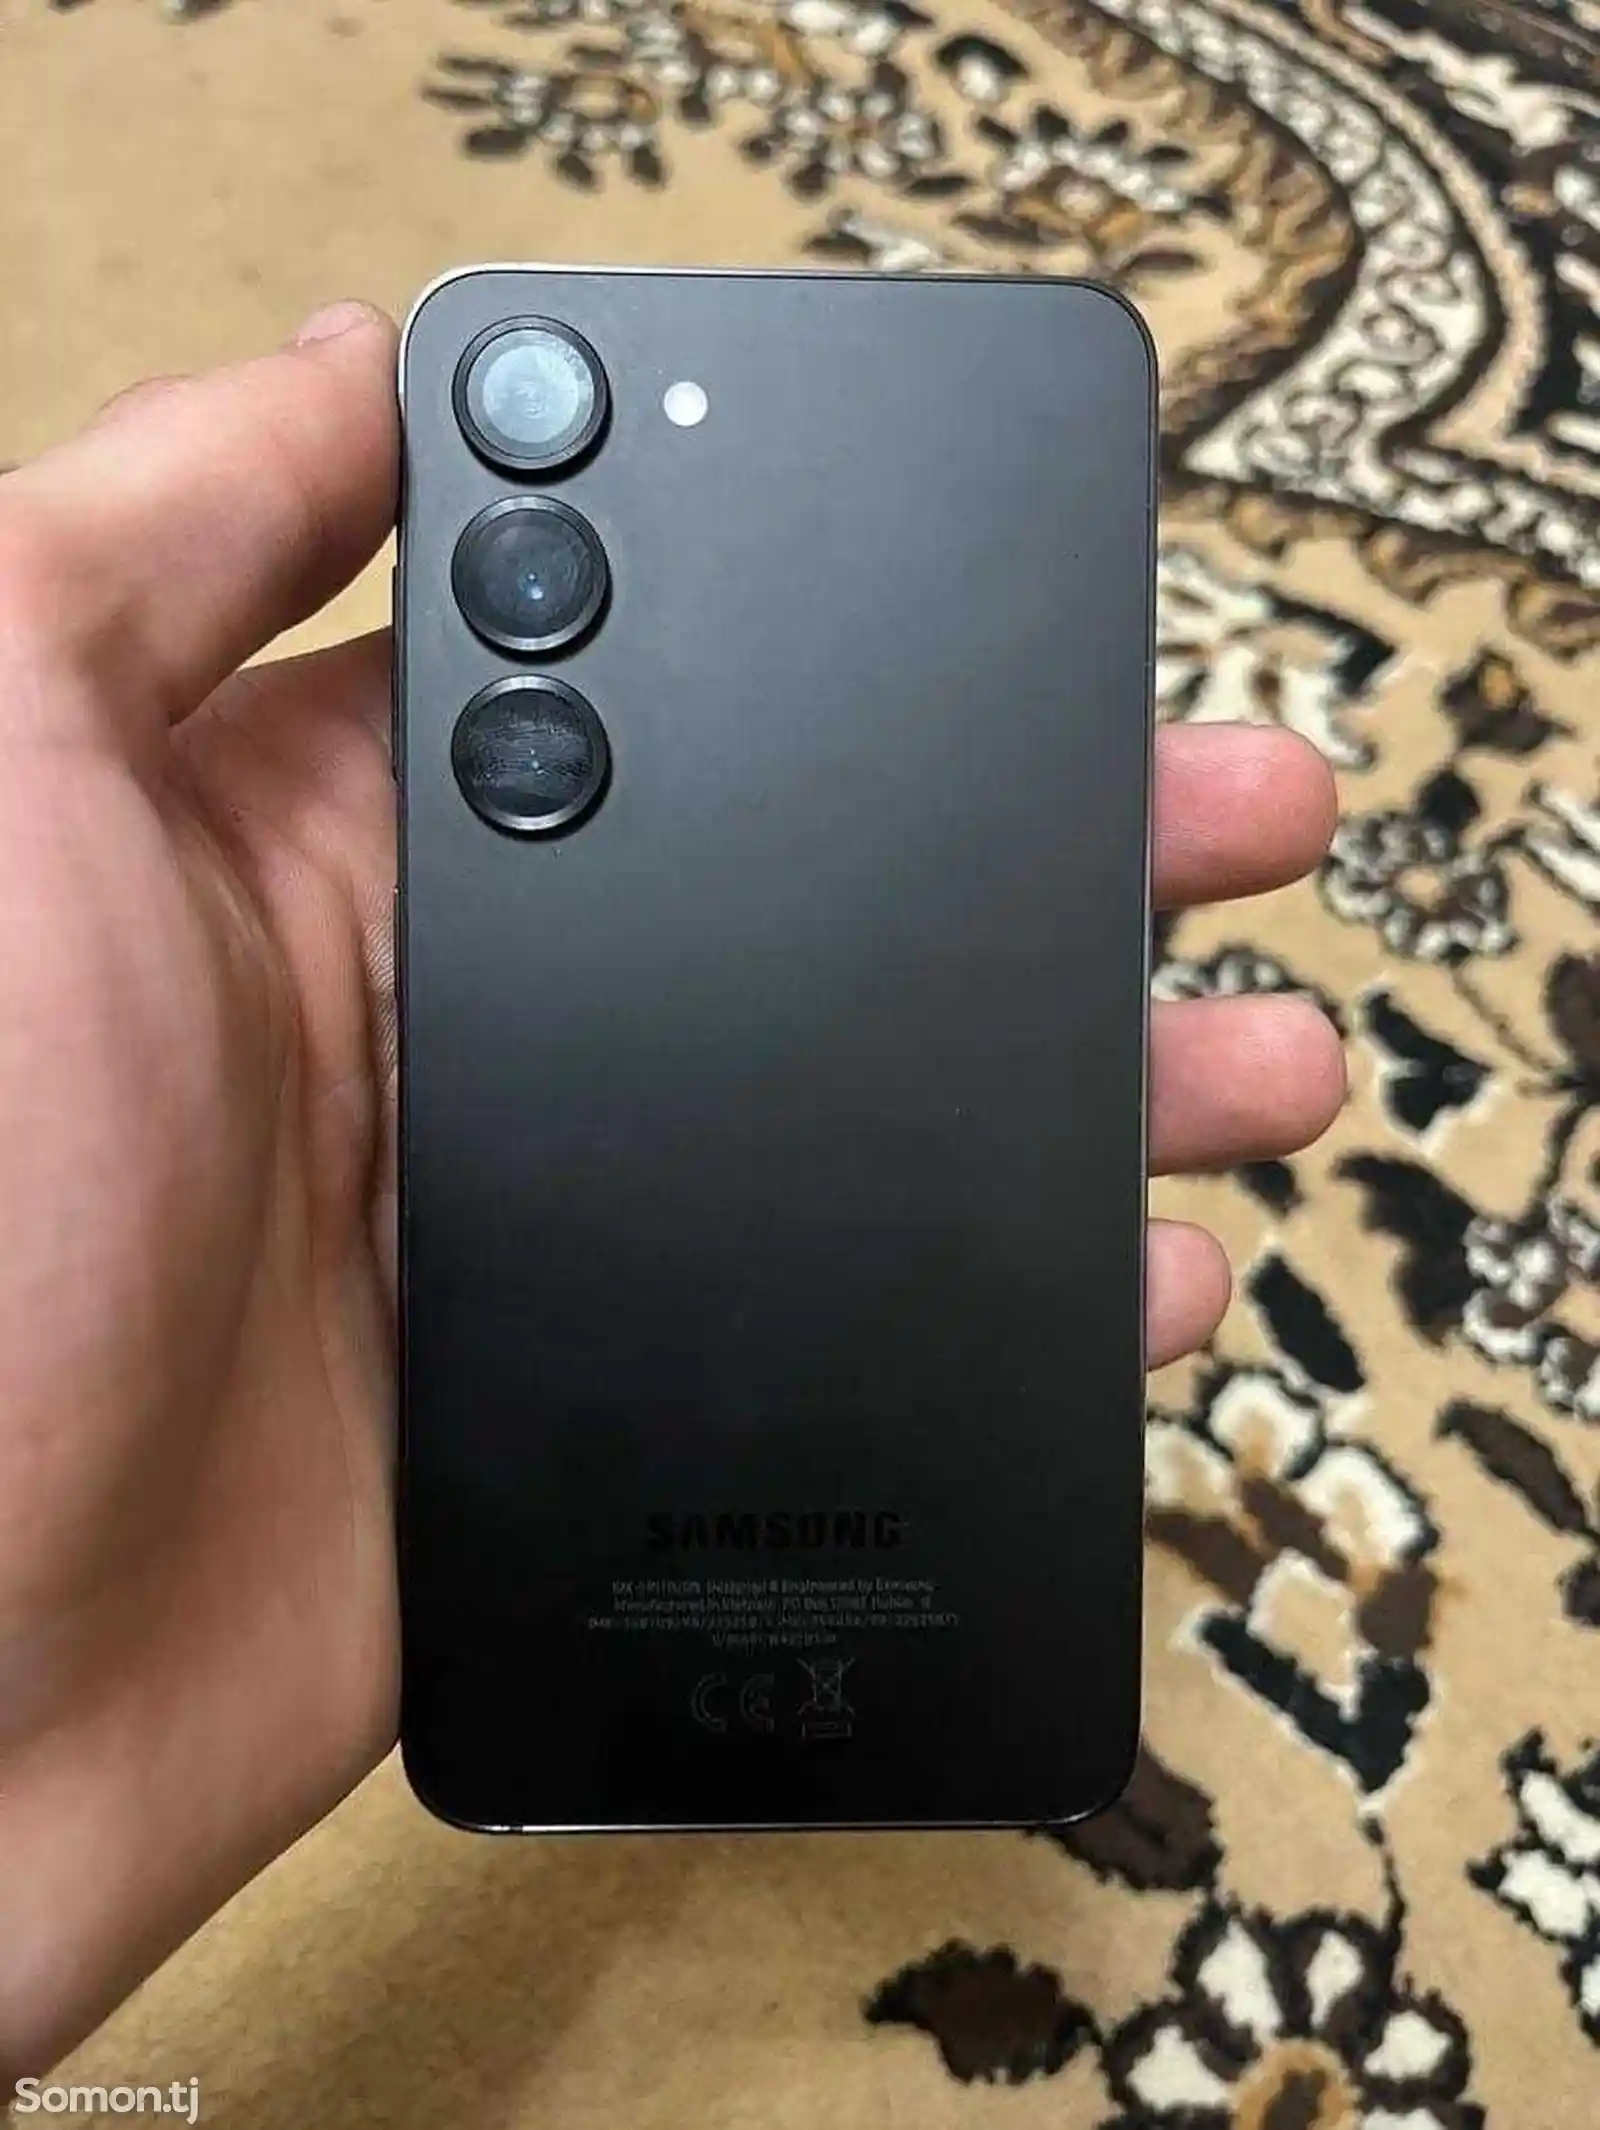 Samsung Galaxy S23-2